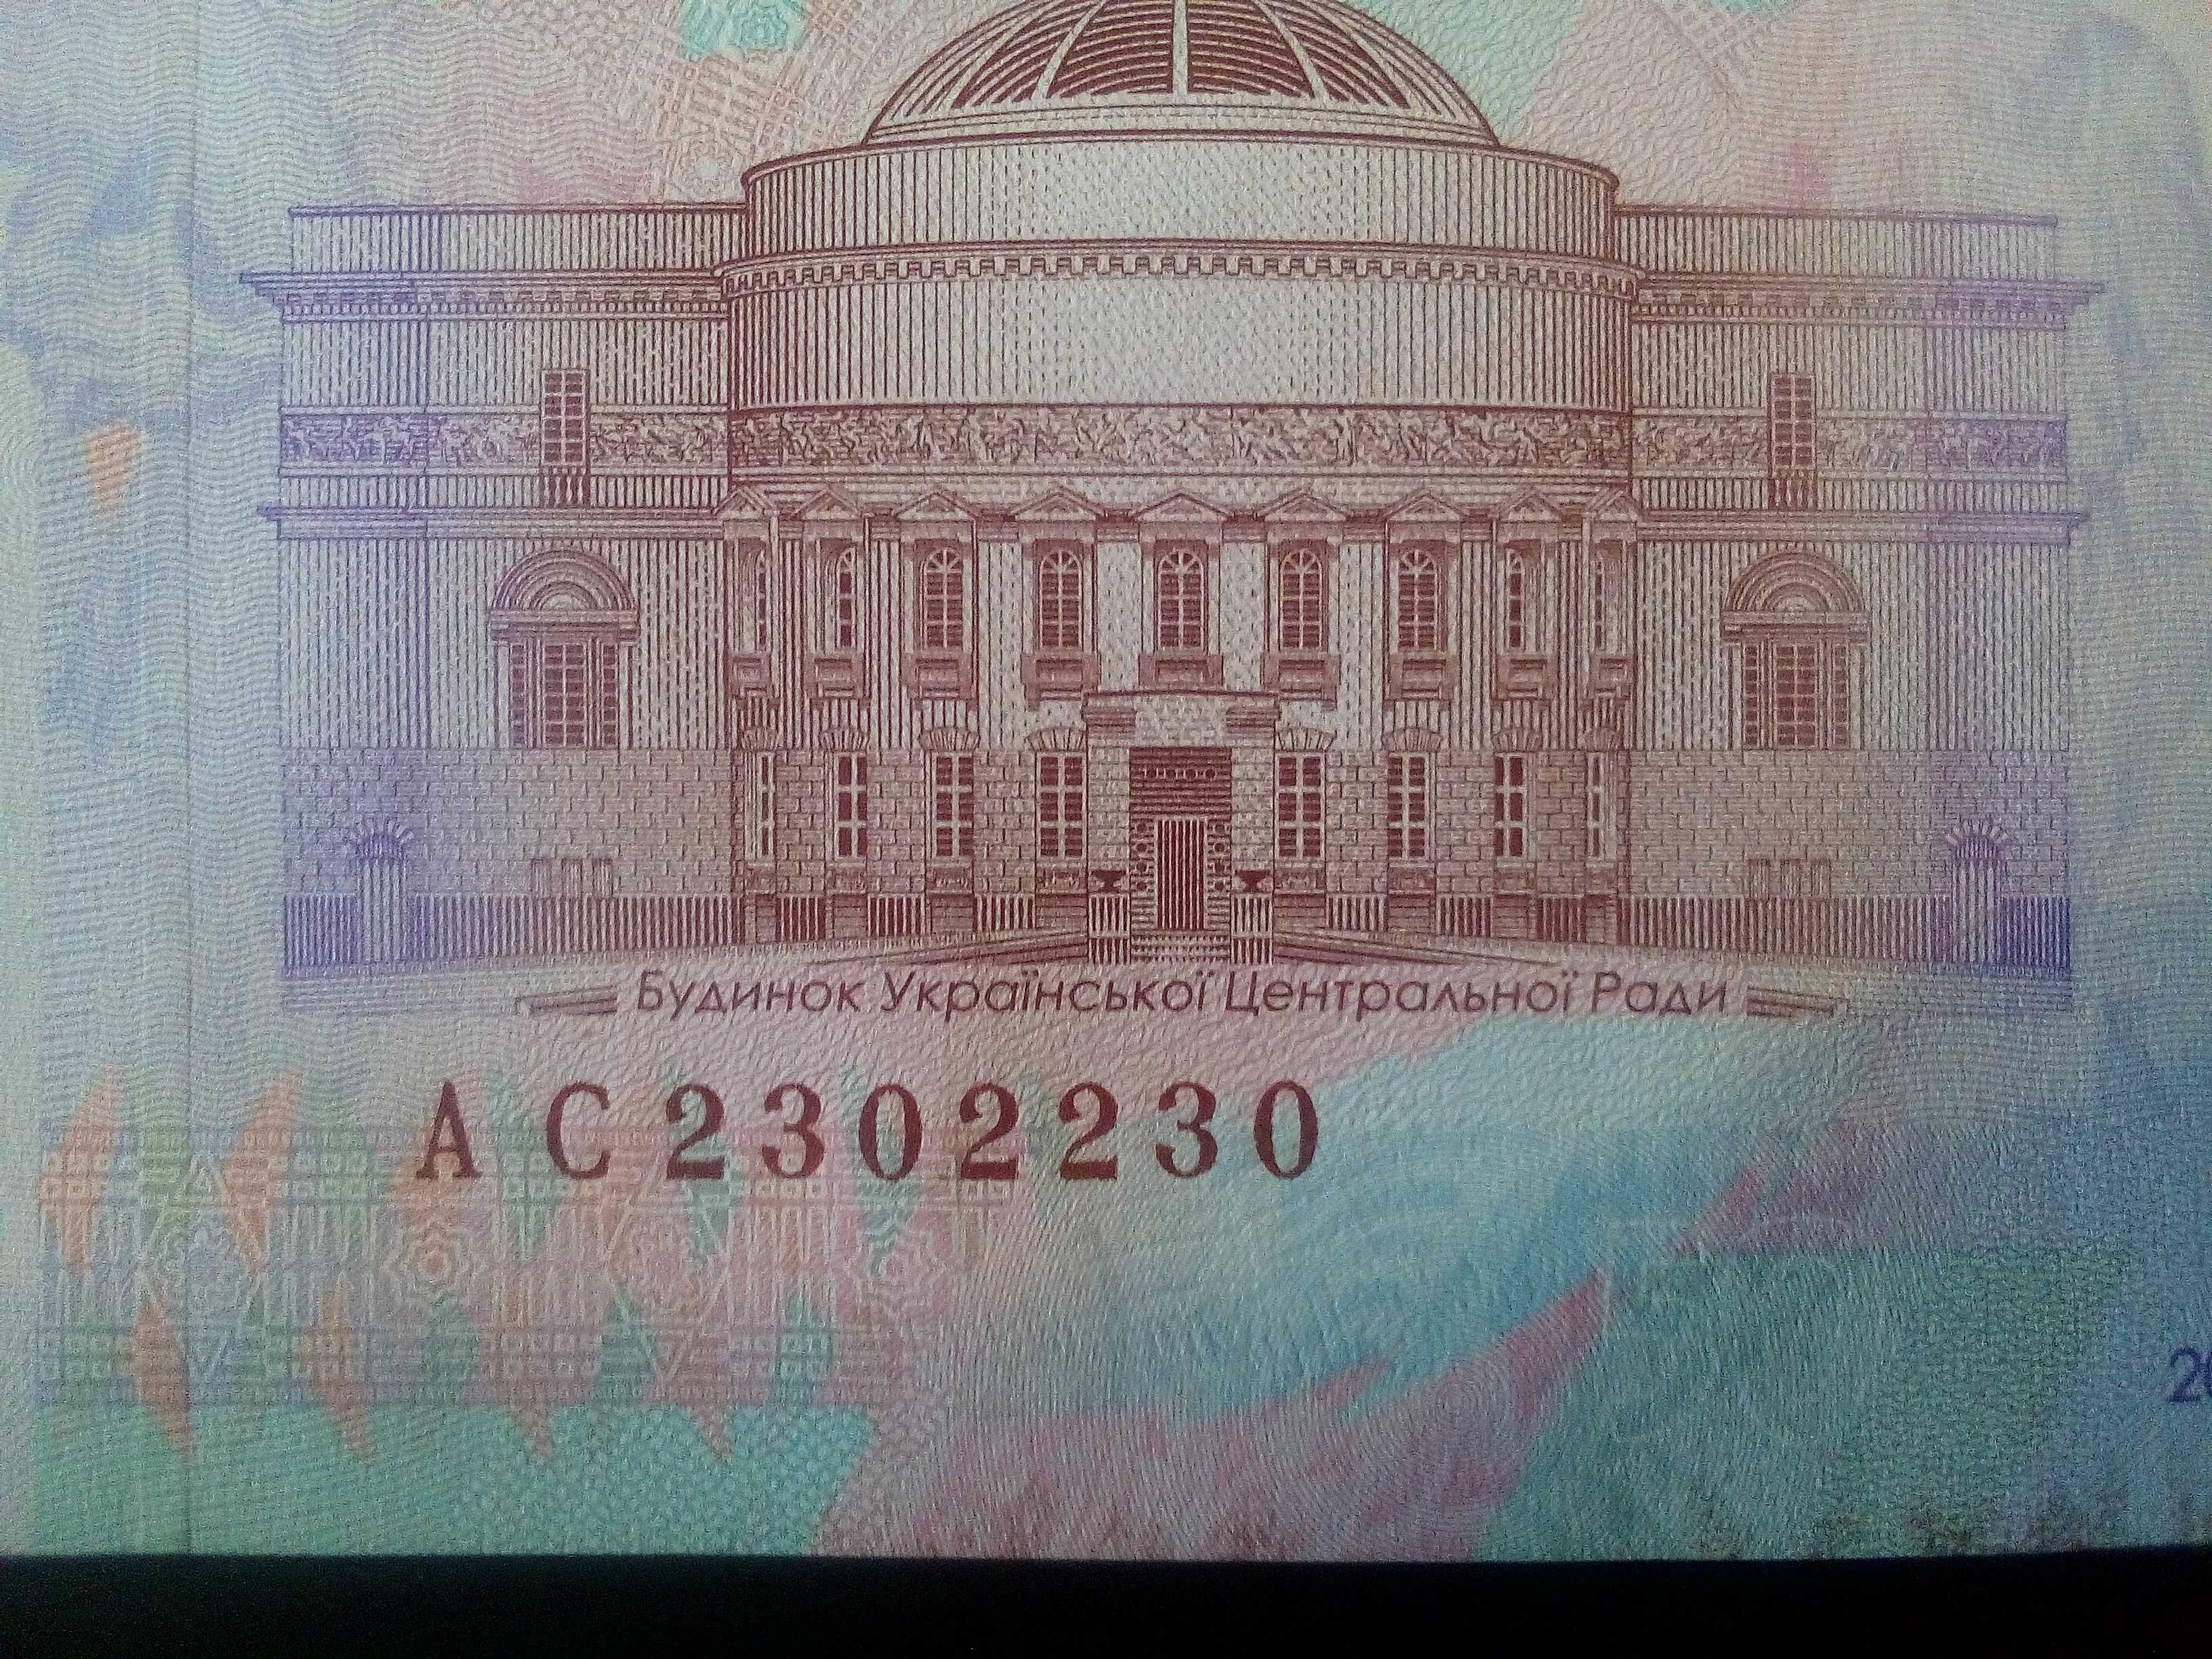 Купюра банкнота 50 гривен. Номер антирадар, MNH